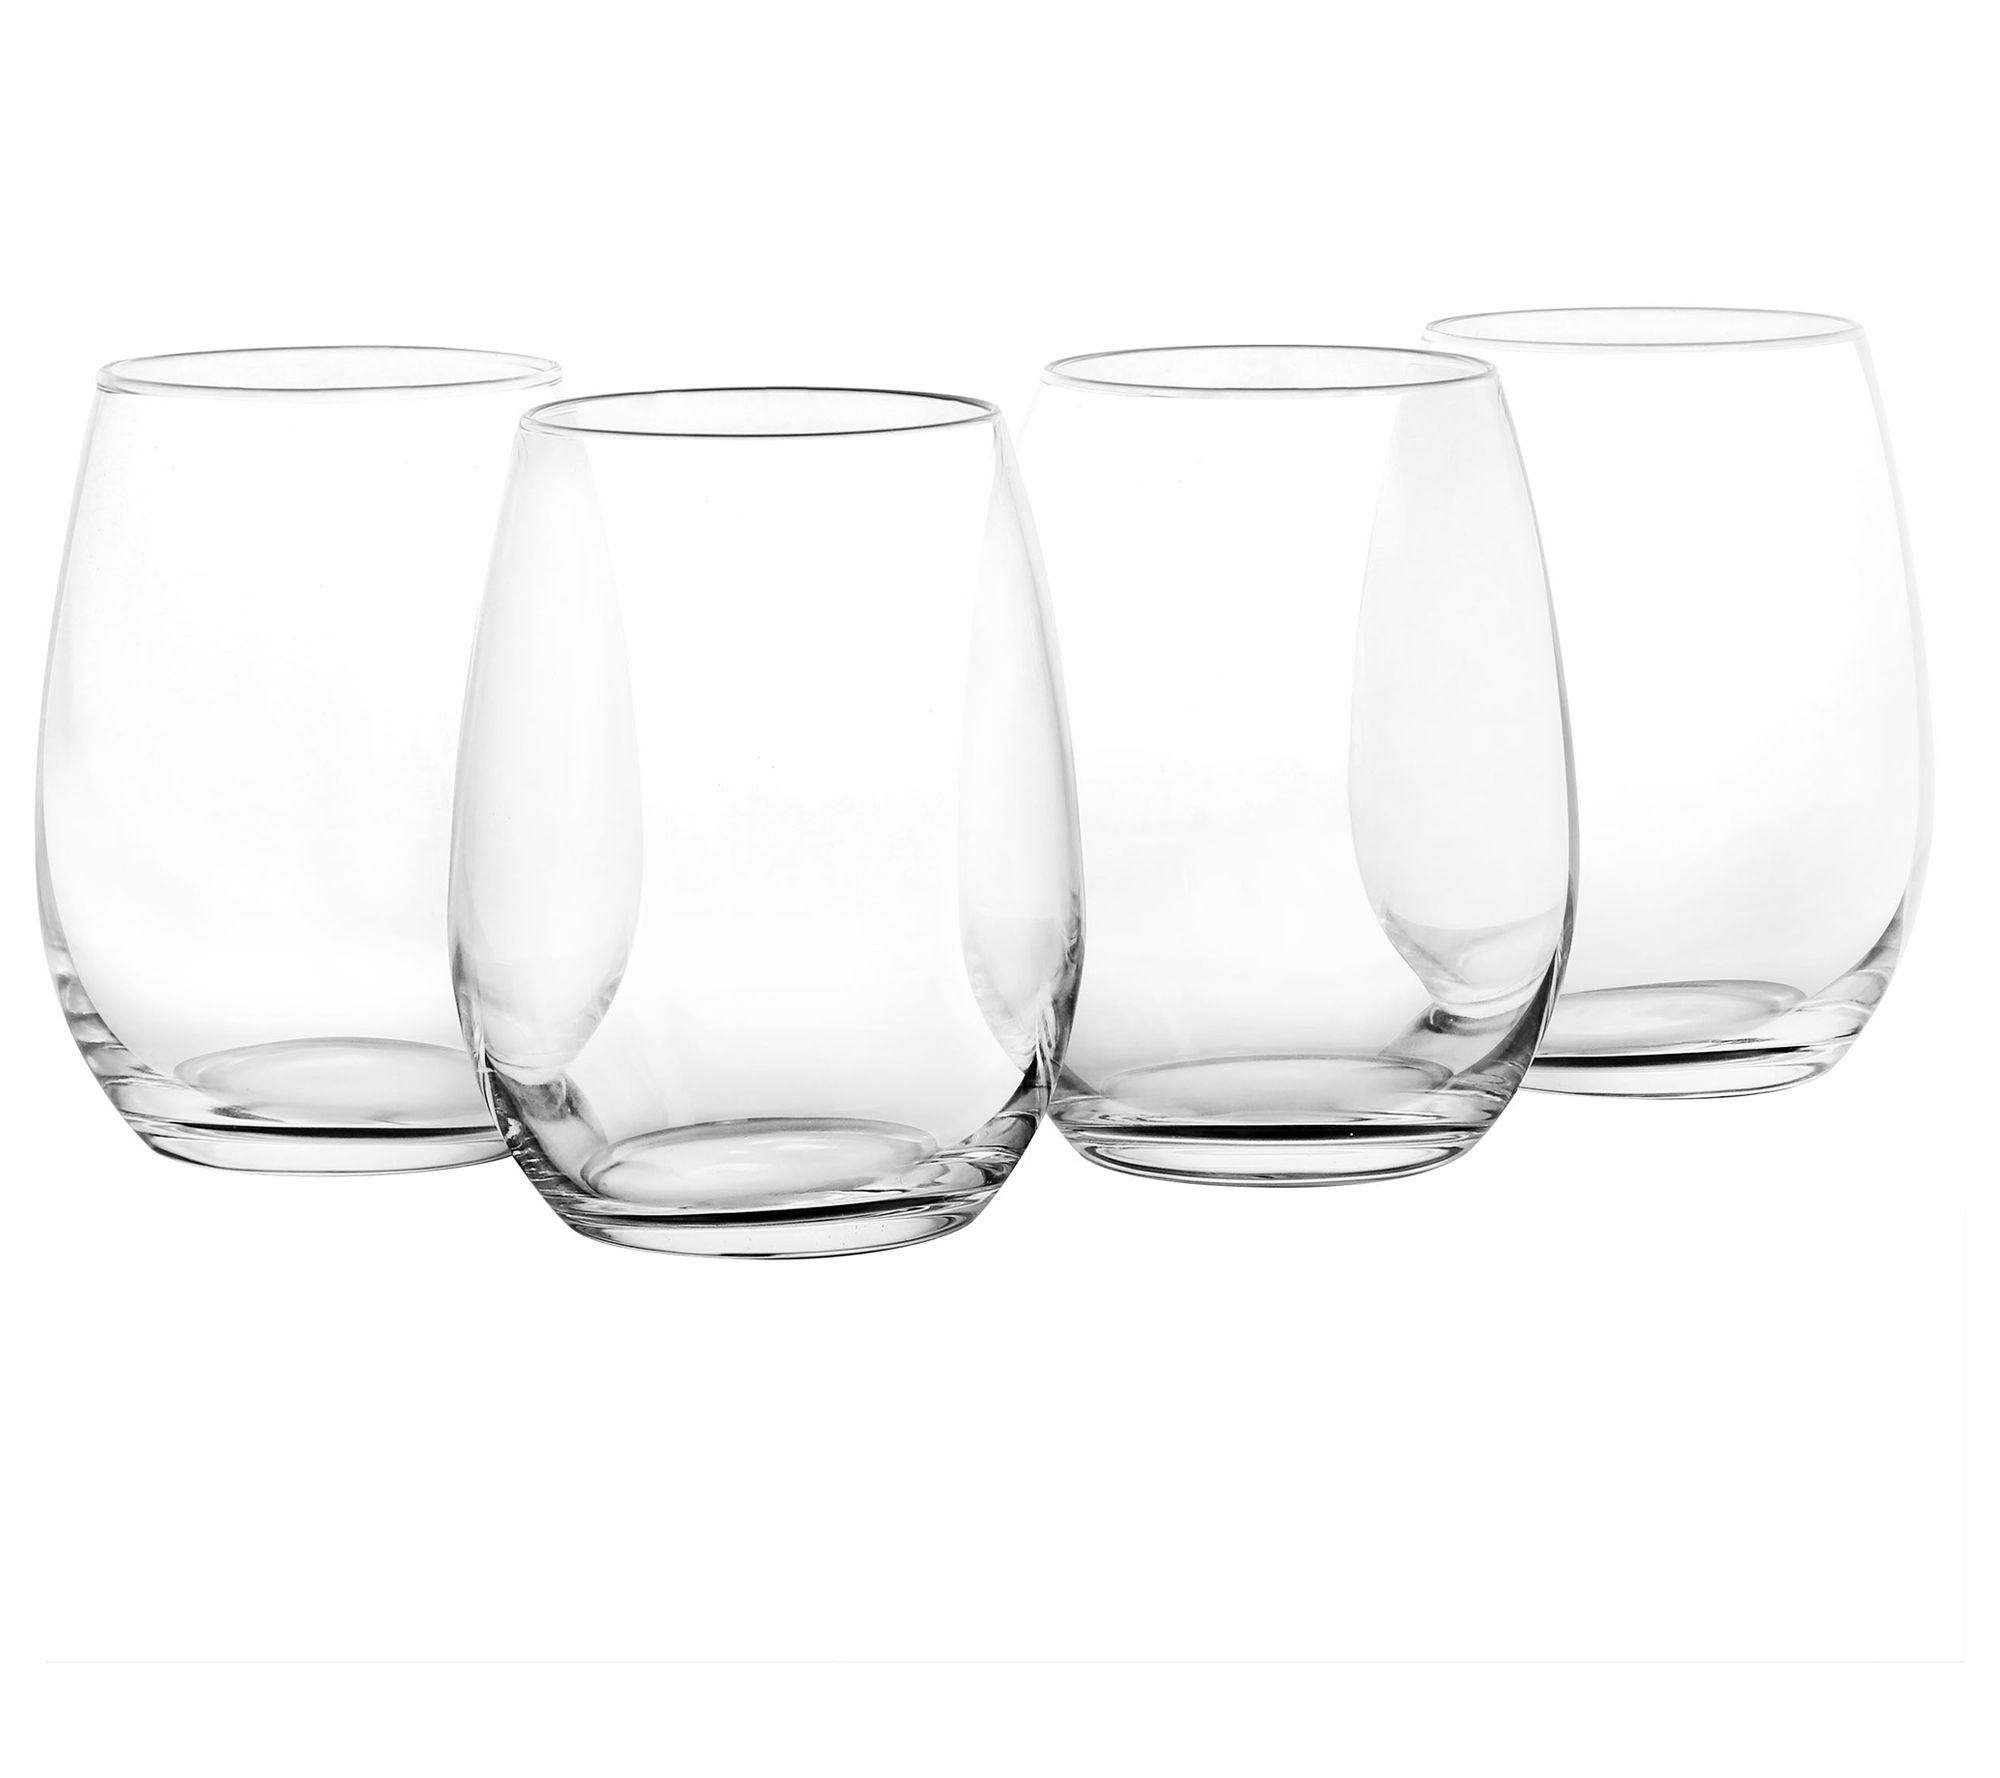 Mikasa Gianna 19 oz. Stemless Wine Glasses, Set of 4